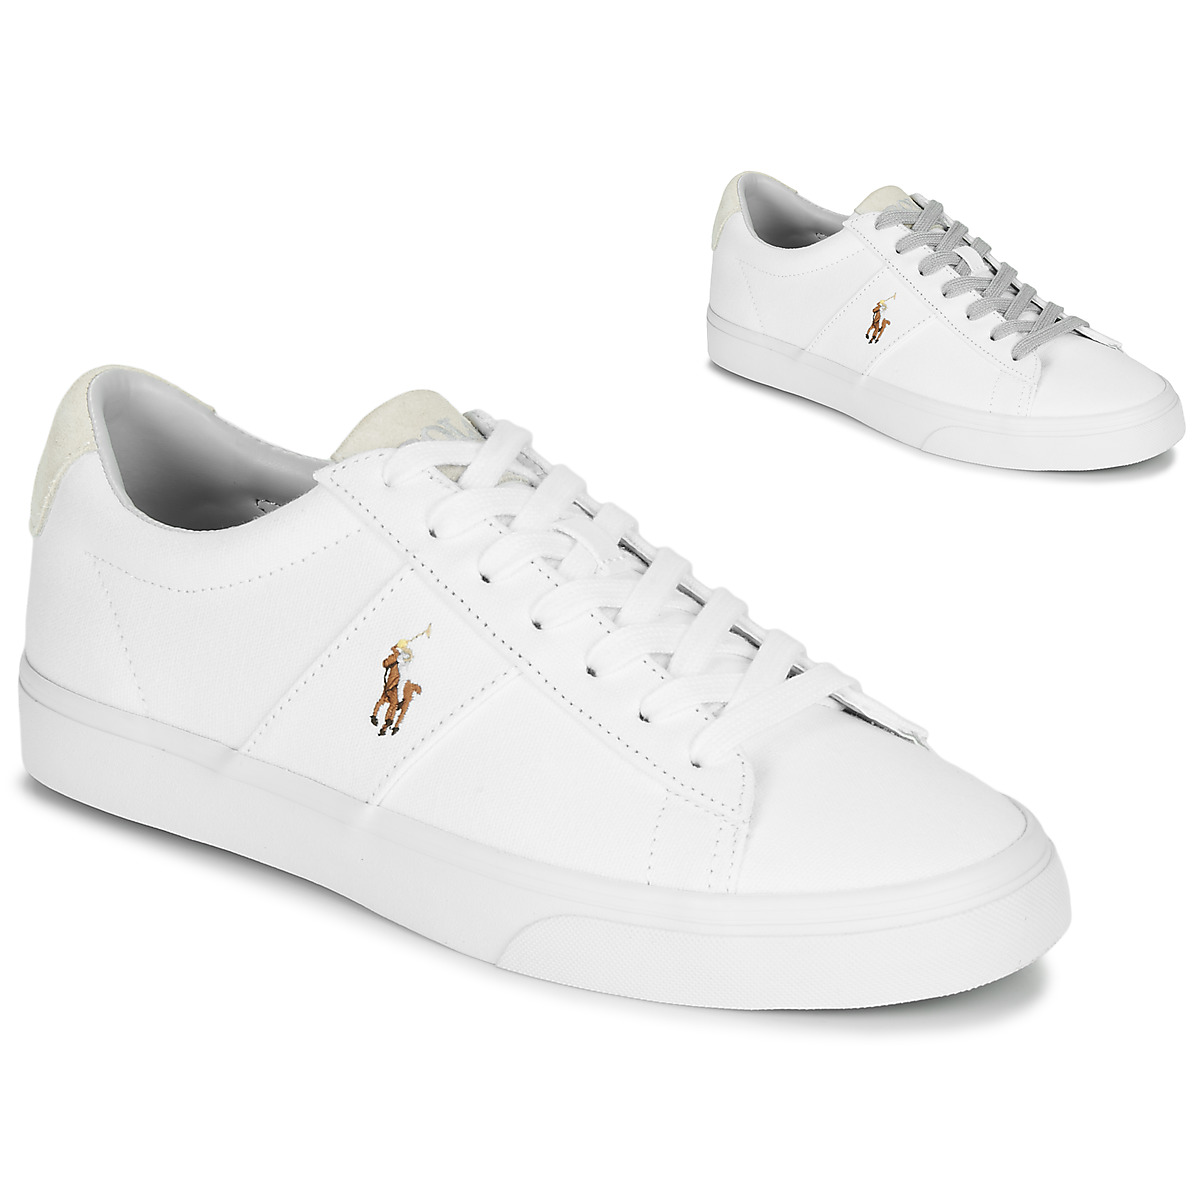 Polo Ralph Lauren SAYER Bianco - Consegna gratuita | Spartoo.it ! - Scarpe  Sneakers basse Uomo 78,99 €